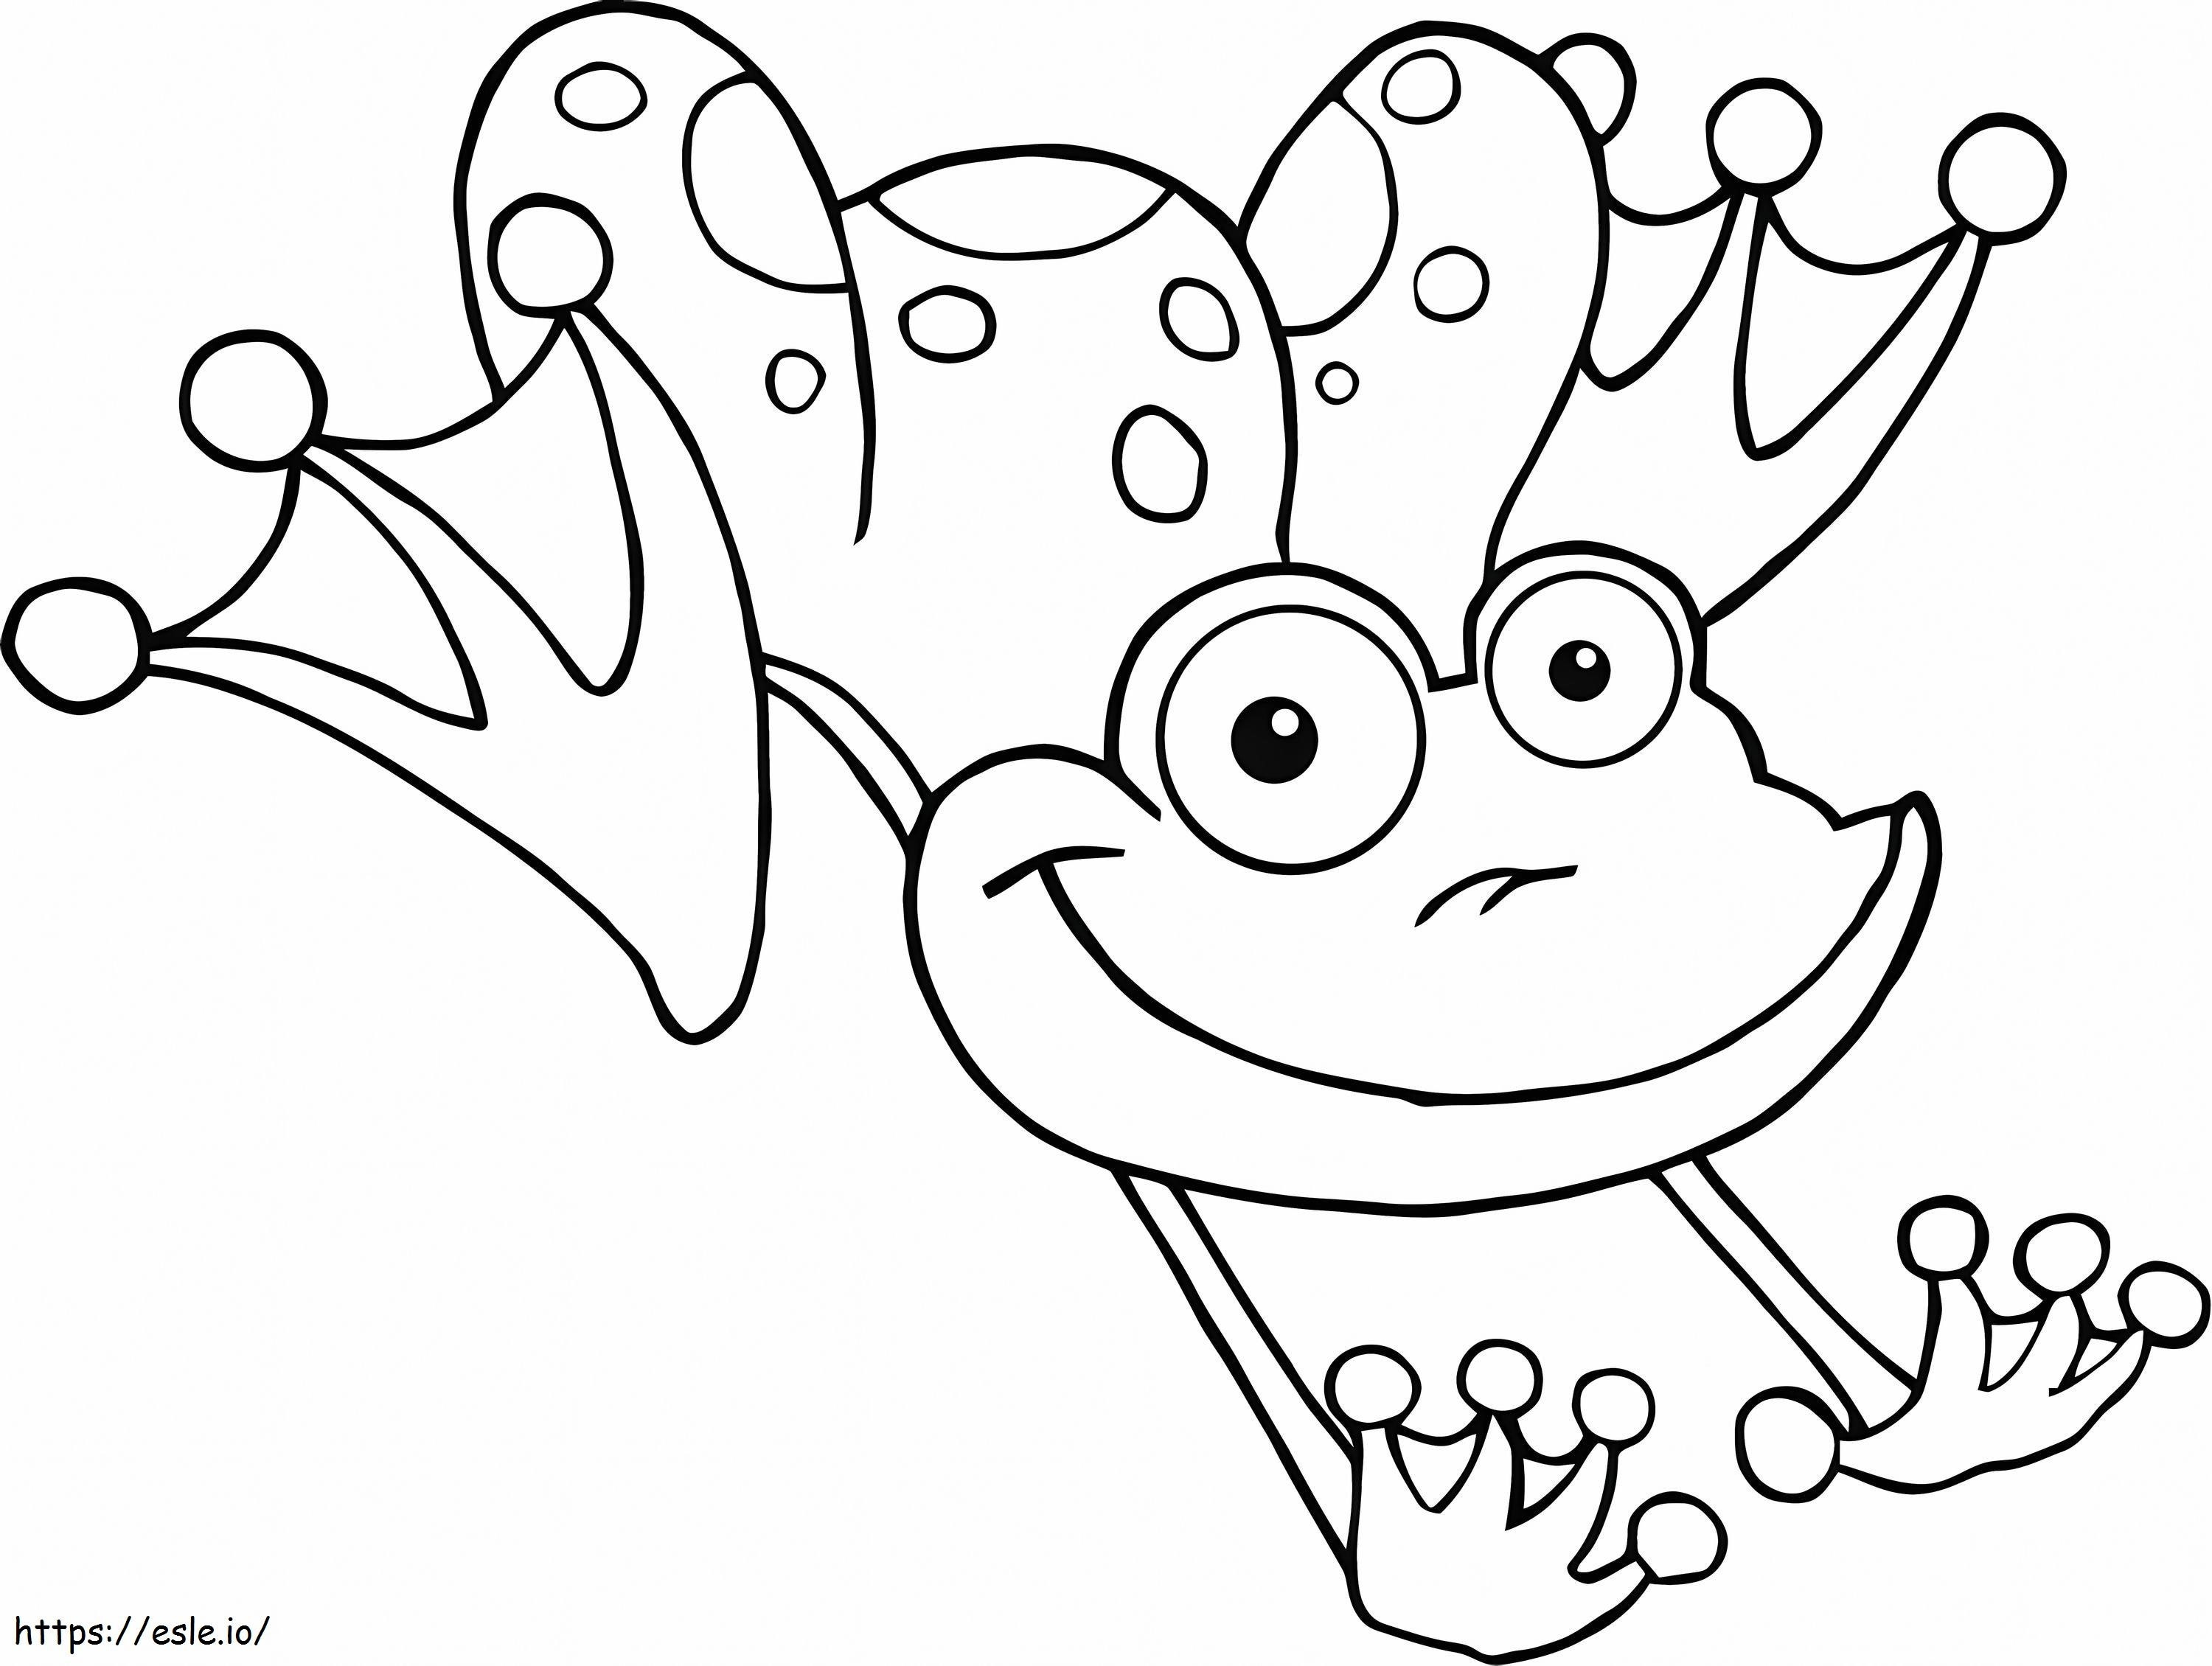 Frosch zeichnen für Kinder 15 ausmalbilder